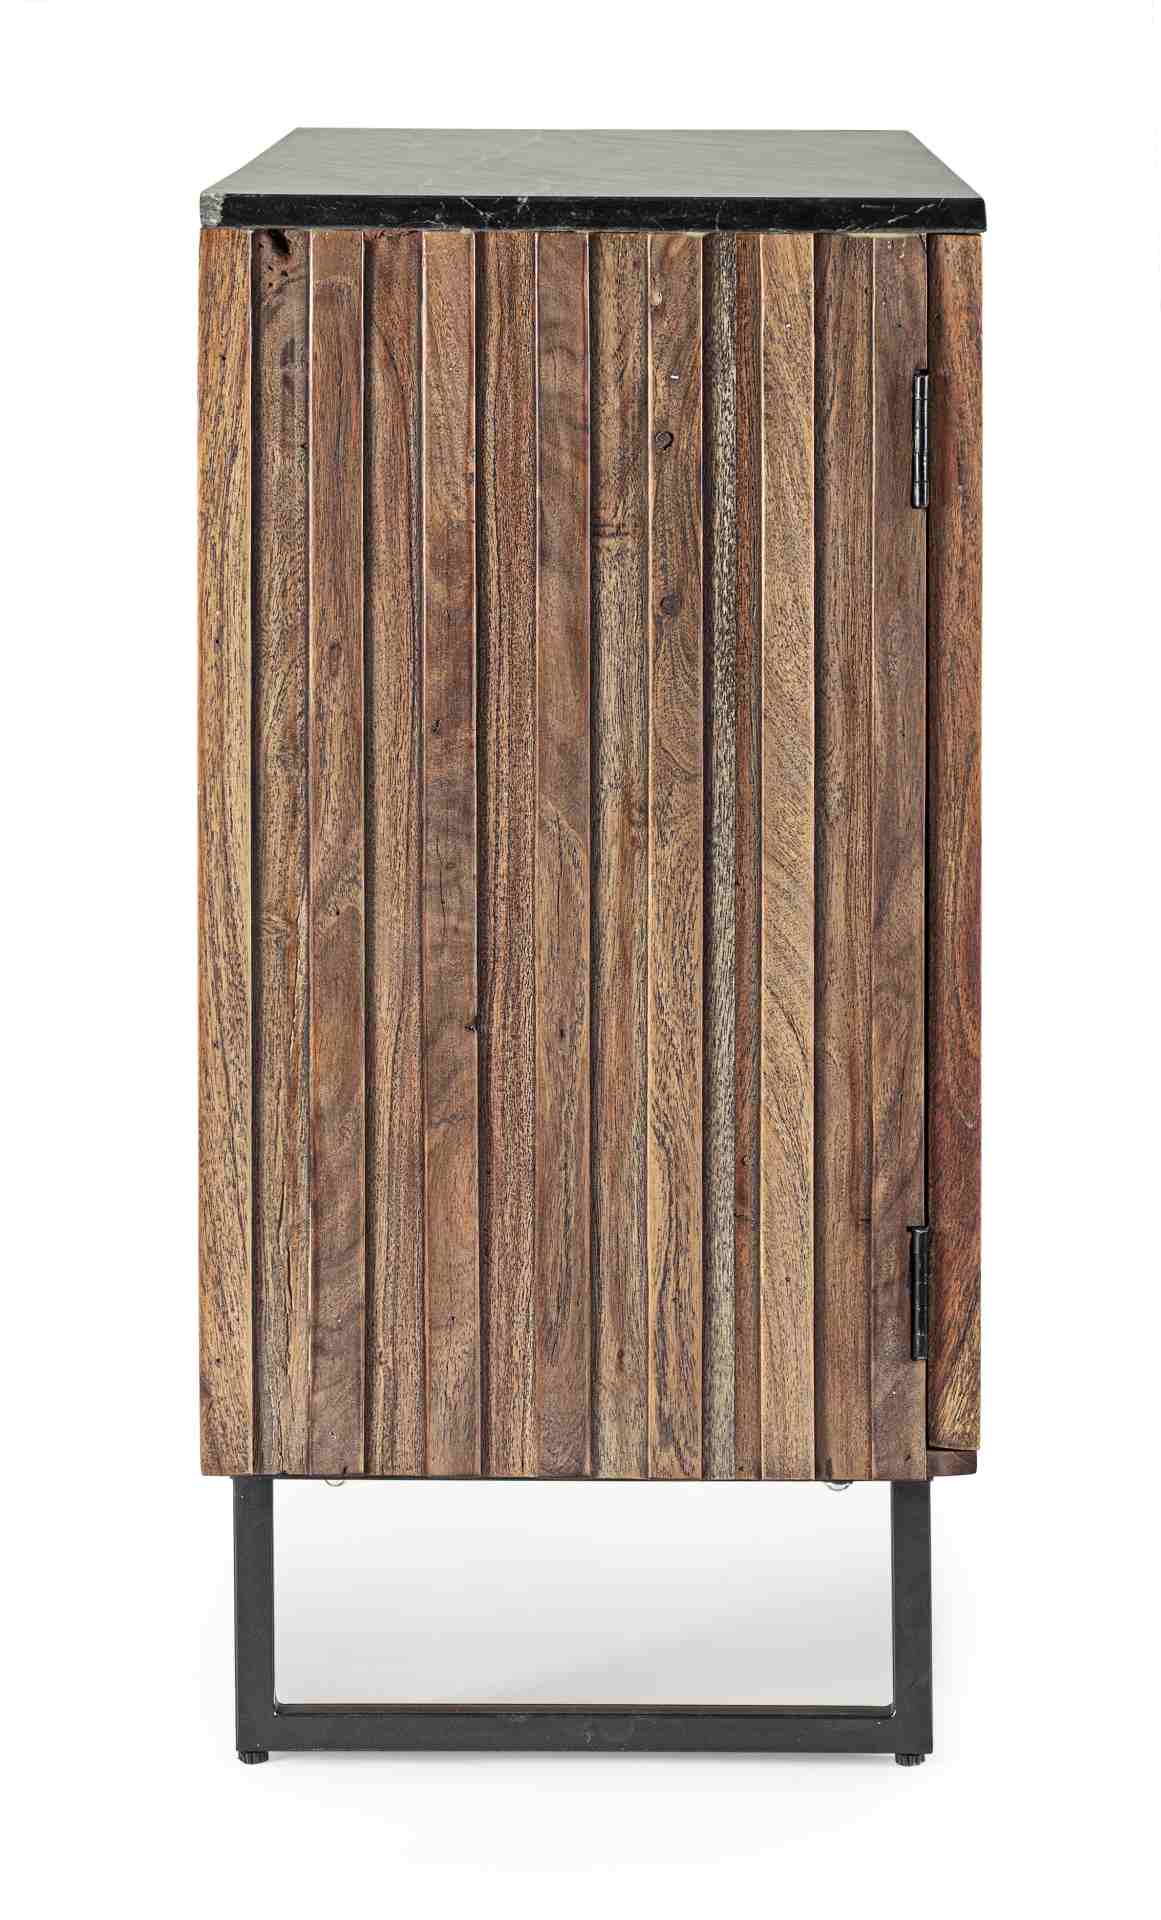 Das Sideboard Norfolk überzeugt mit seinem modernem Design. Gefertigt wurde es aus Akazien-Holz, welches einen natürlichen Farbton besitzt. Das Gestell ist aus Metall und hat eine schwarze Farbe. Die Oberflächenplatte ist aus Marmor. Das Sideboard verfügt